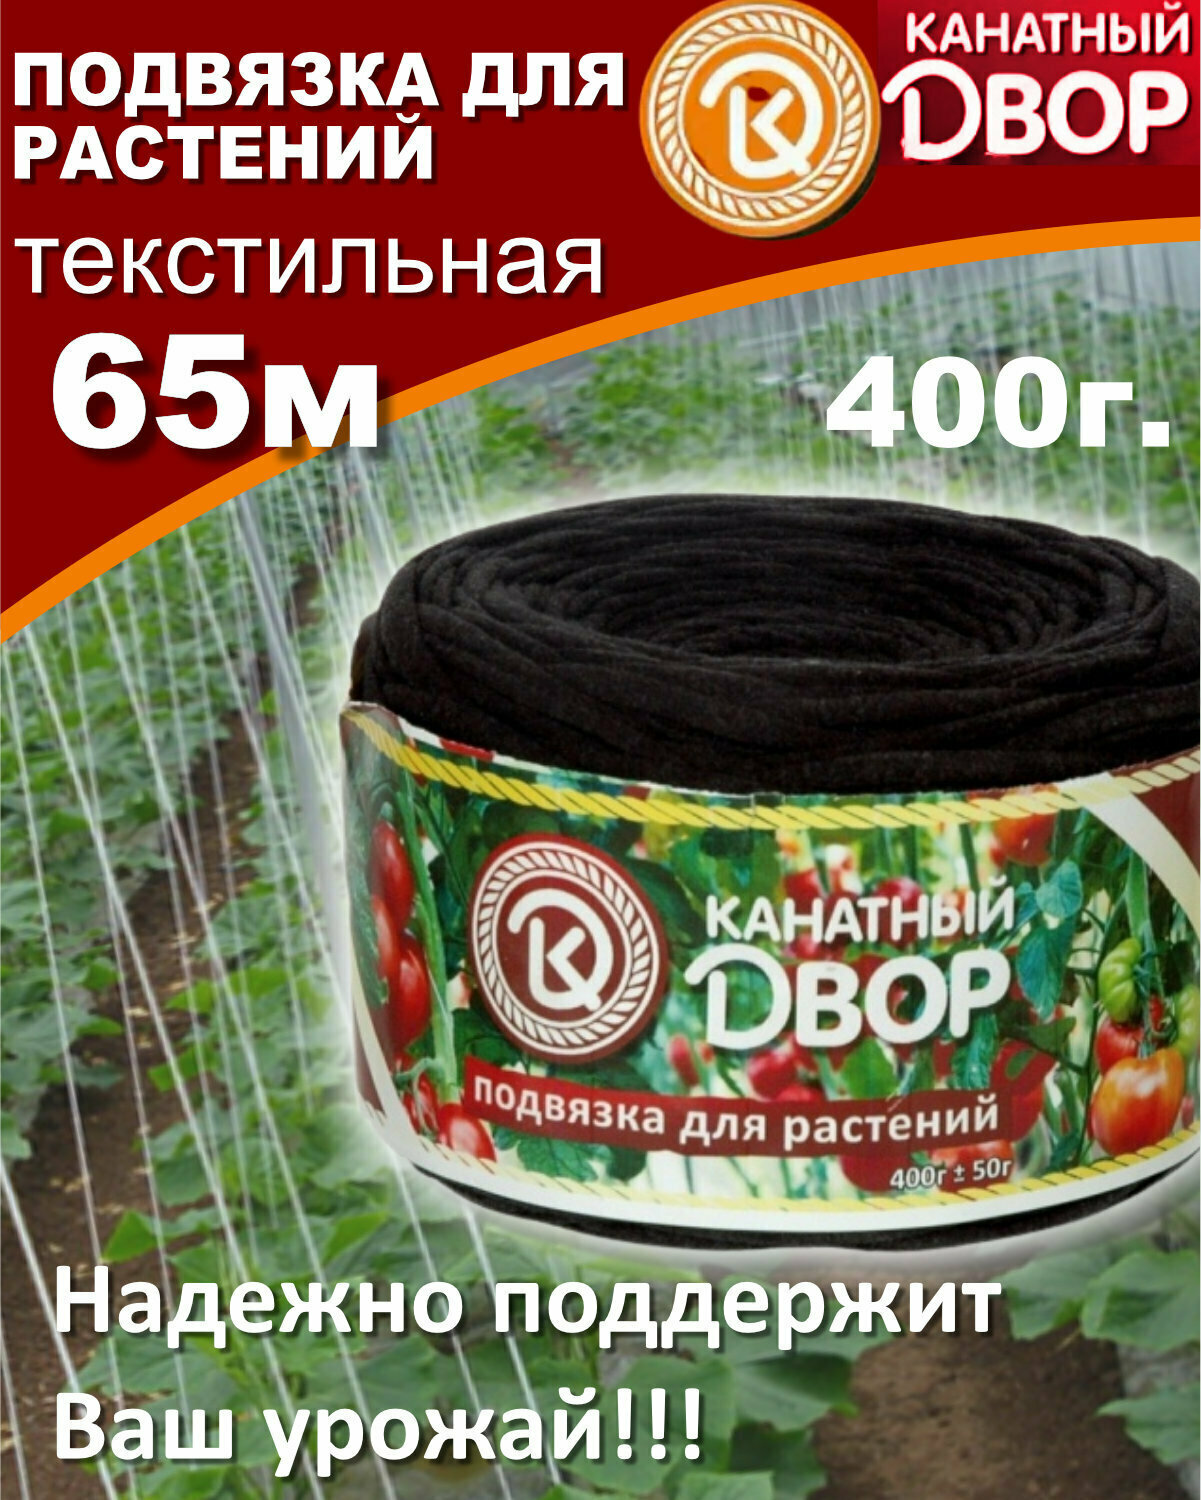 Подвязка для растений 400гр 65м текстильная цвета в ассортименте тапенер для подвязки помидор огурцов лента для томатов в теплице